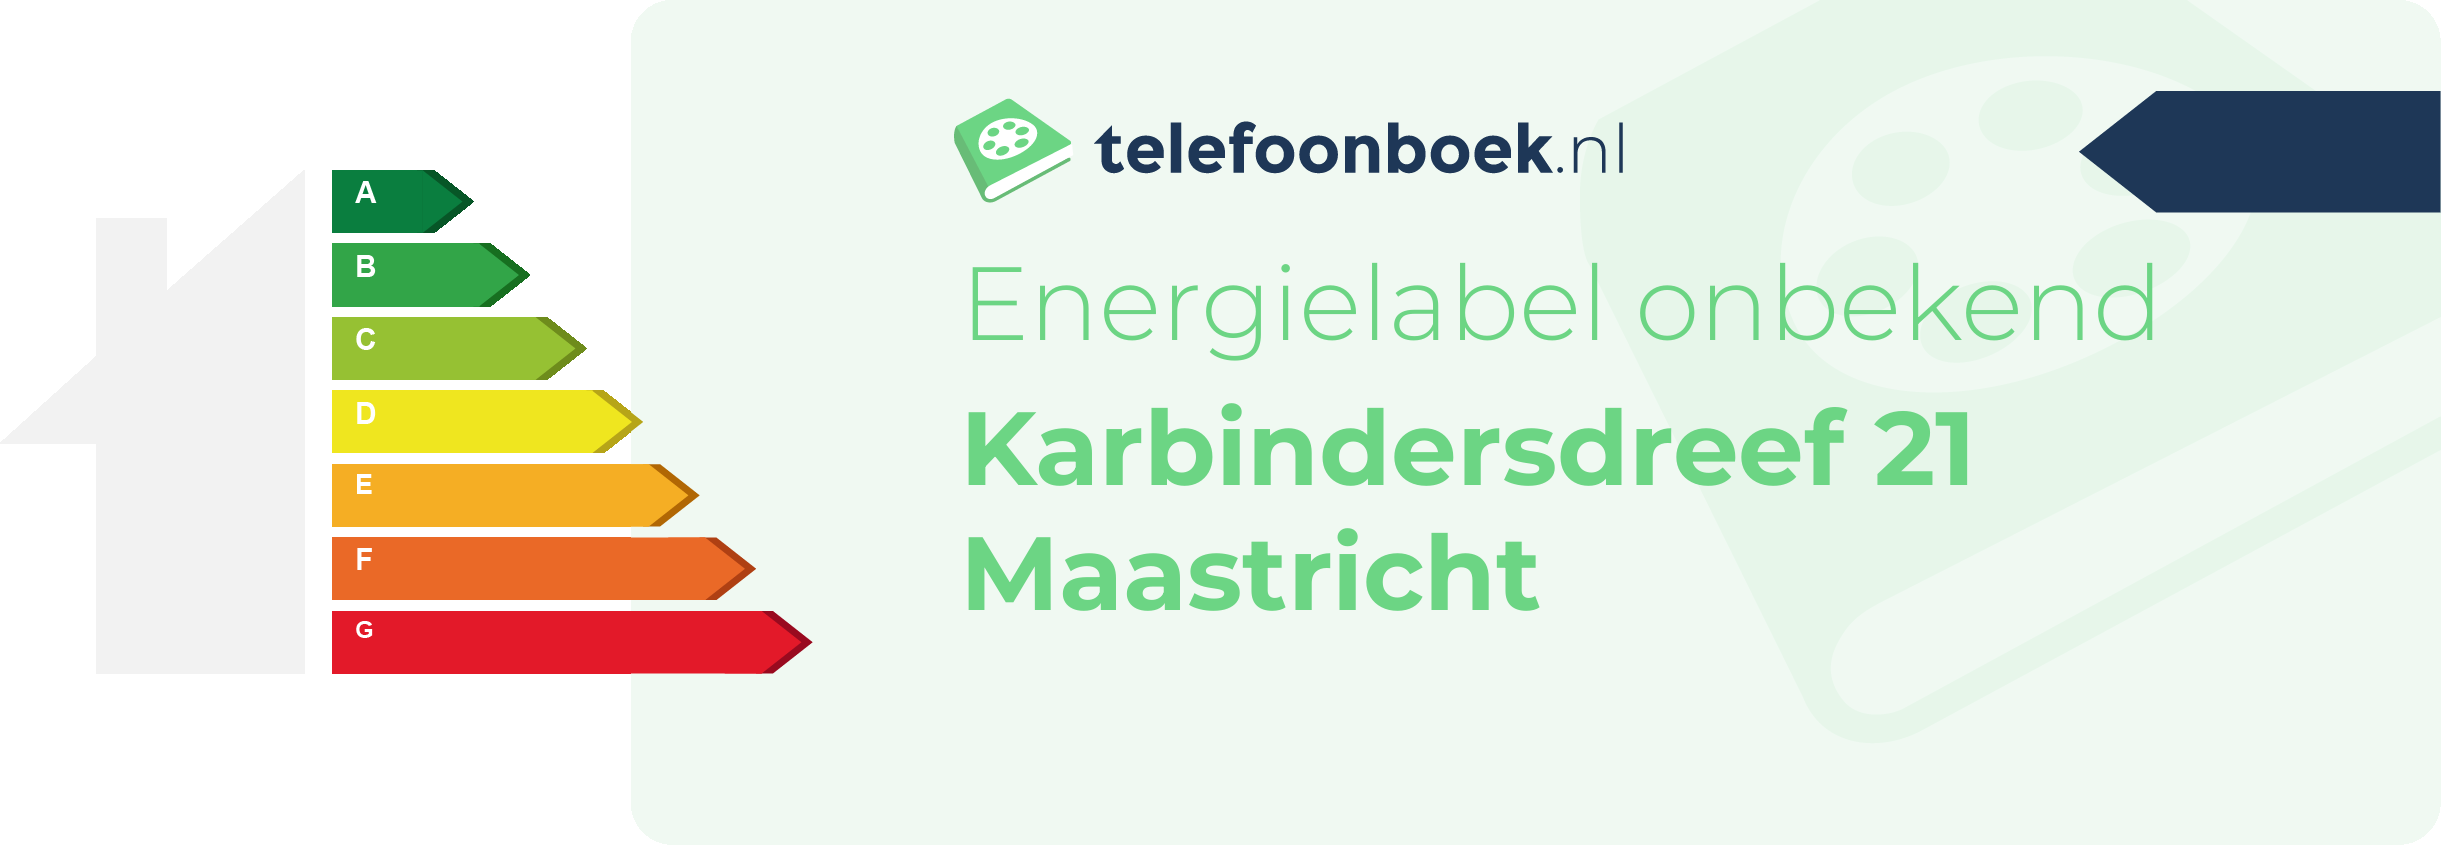 Energielabel Karbindersdreef 21 Maastricht